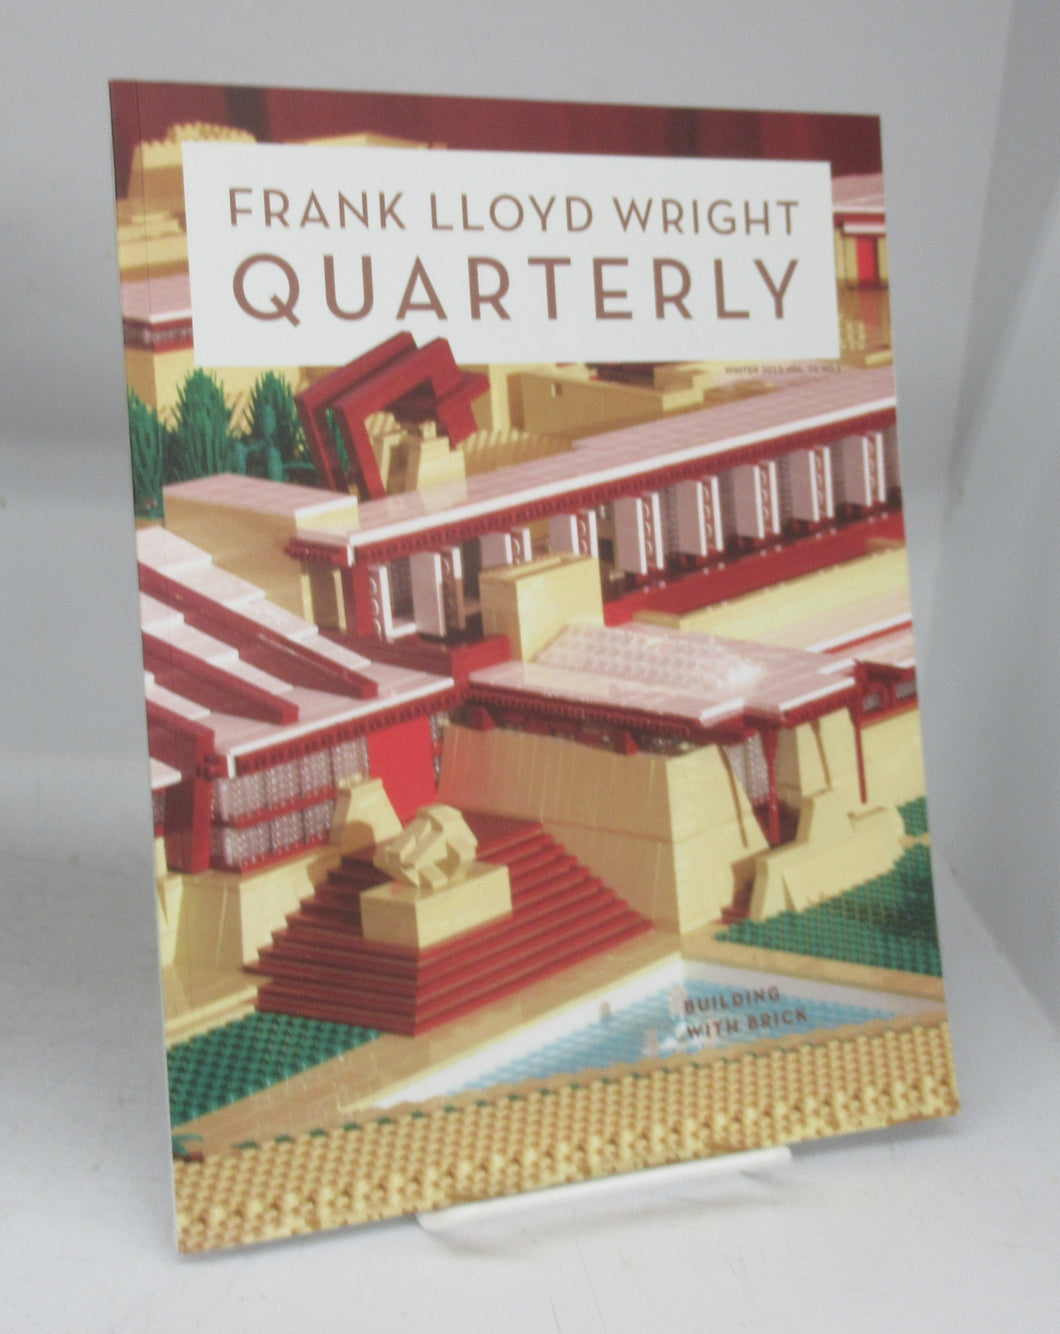 Frank Lloyd Wright Quarterly, Winter 2015